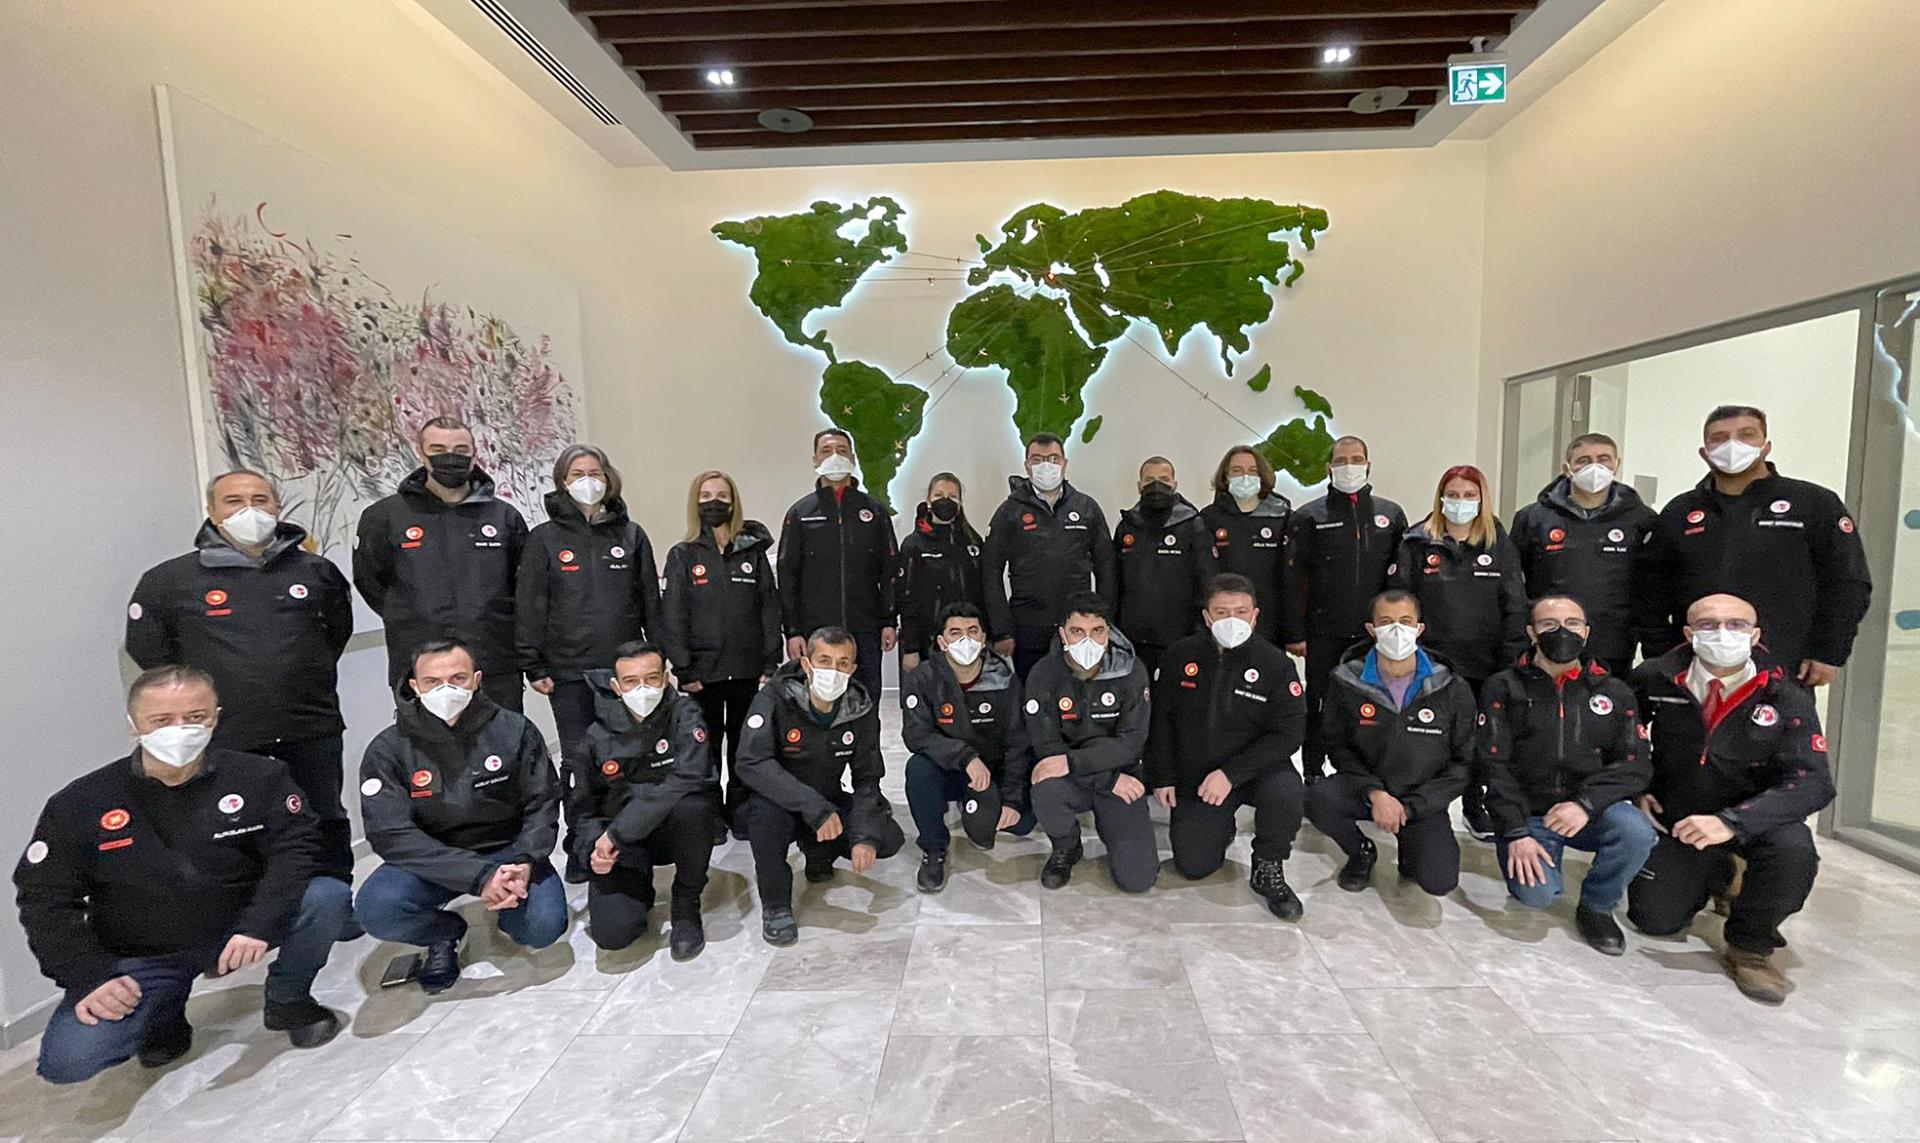 Kezdődött a 6. Nemzetközi Antarktiszi Tudományos Expedíció kalandja